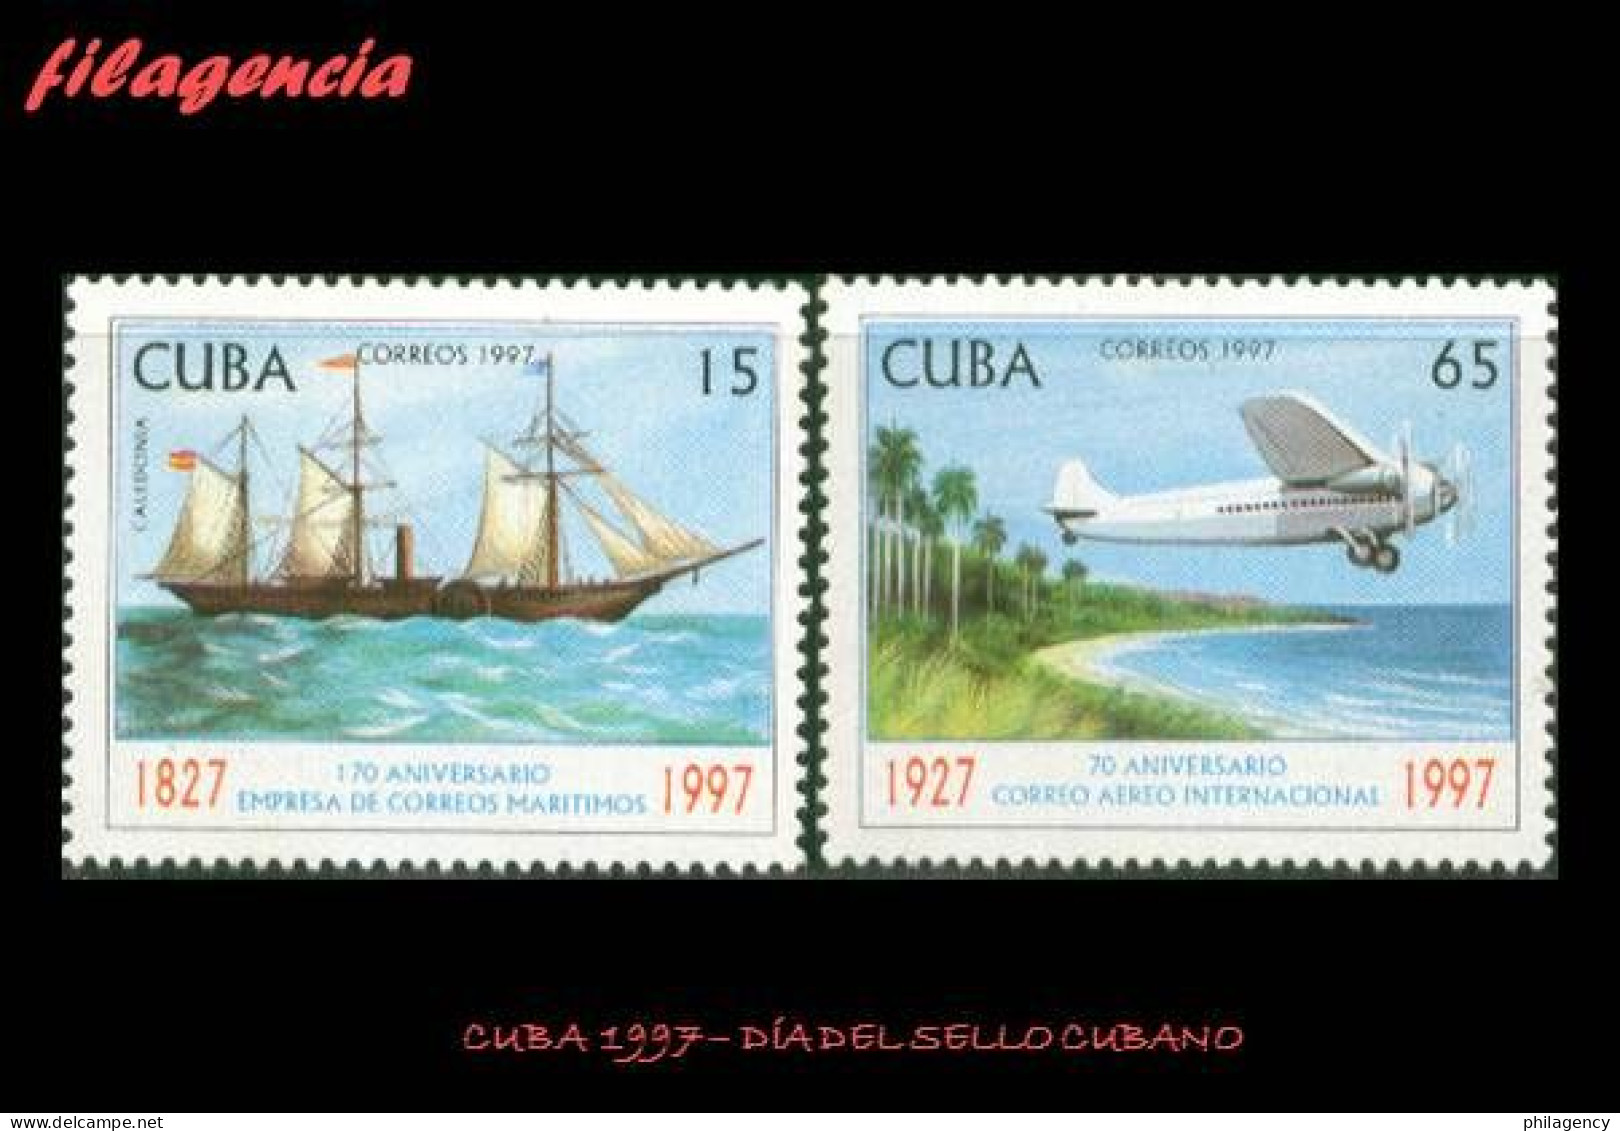 CUBA MINT. 1997-08 DÍA DEL SELLO CUBANO. ANIVERSARIOS DEL CORREO MARÍTIMO & AÉREO - Ongebruikt